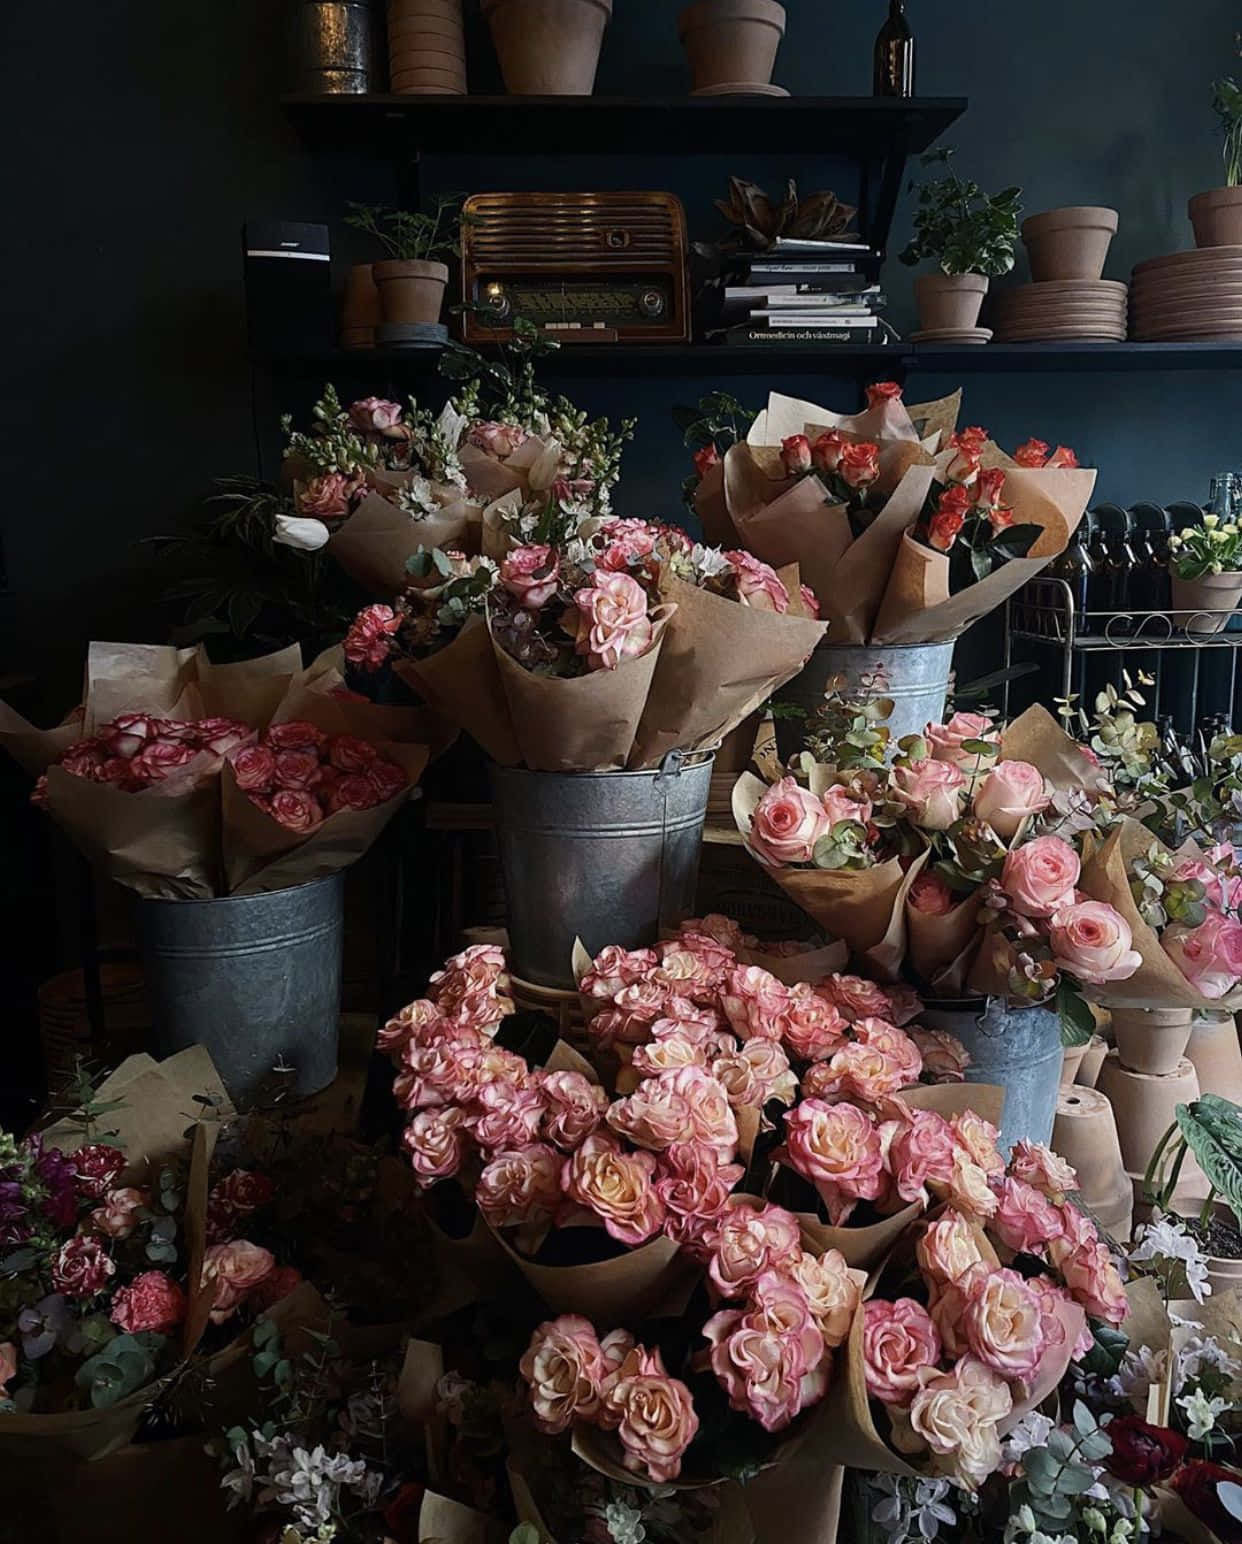 Vibrant Flower Shop in Full Bloom Wallpaper